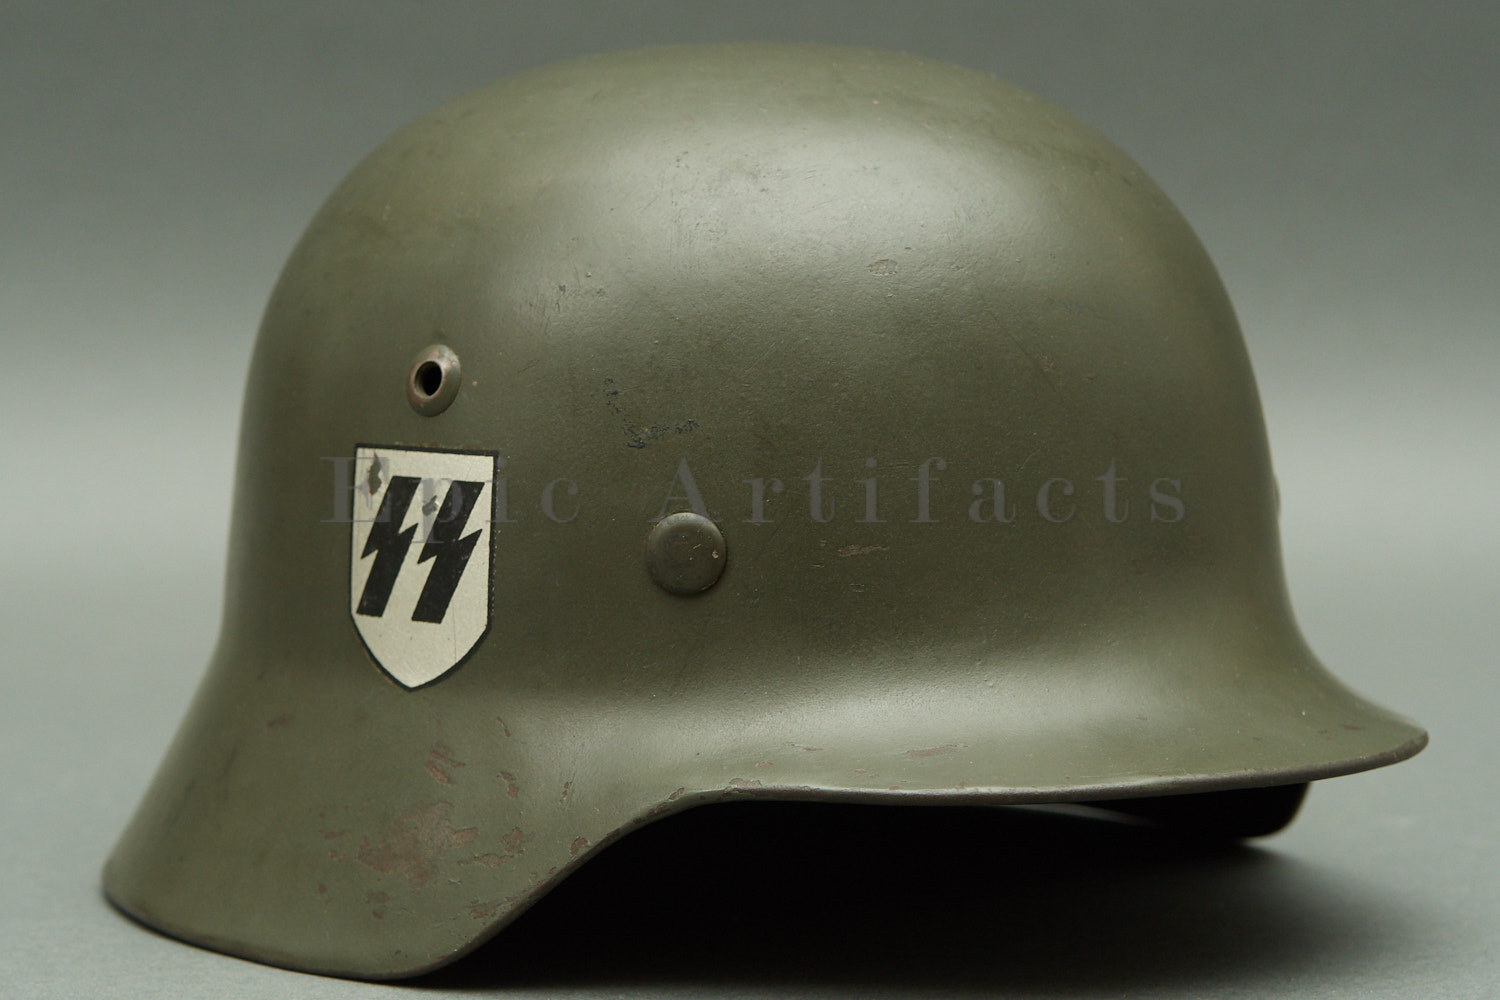 Nazi Helmet Decals